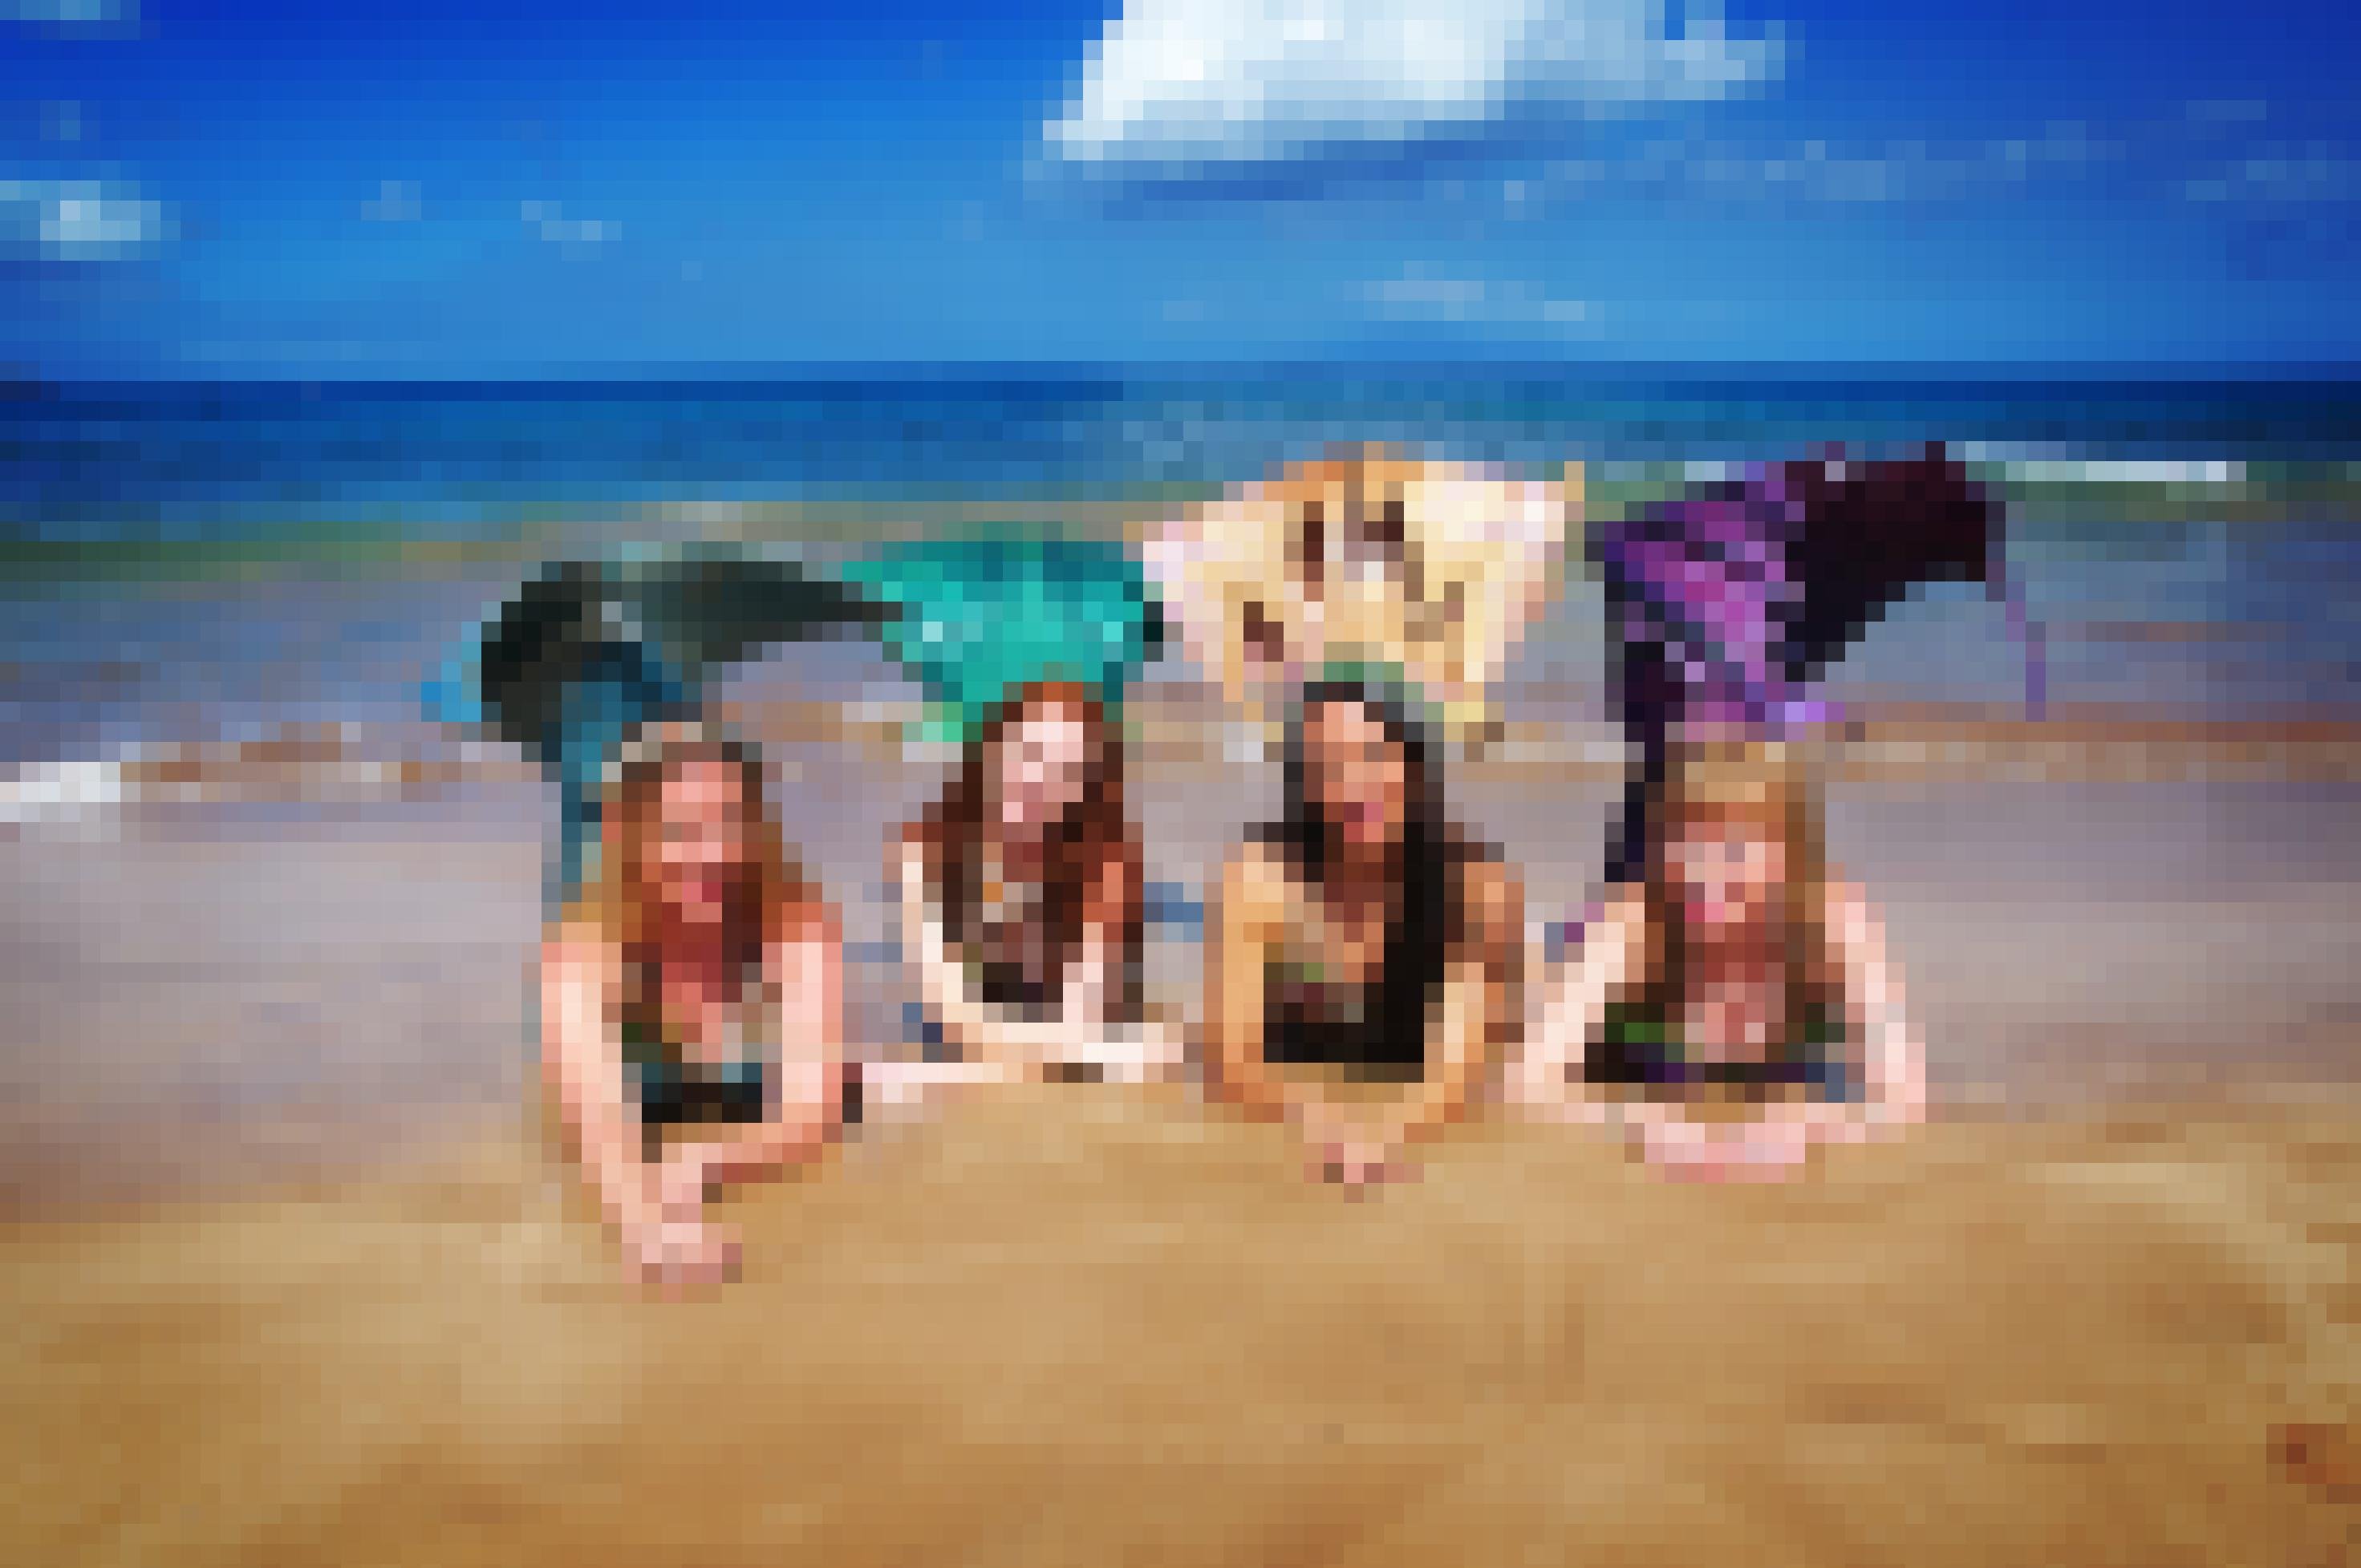 vier Frauen posieren in Meerjungfrauen-Kostümen am Meer, zwei blond, eine rothaarig, eine dunkle Haare. Sie liegen auf dem Bauch am Strand, die grünen, goldenen und lila Schwanzflossen angewinkelt und hochgestellt.